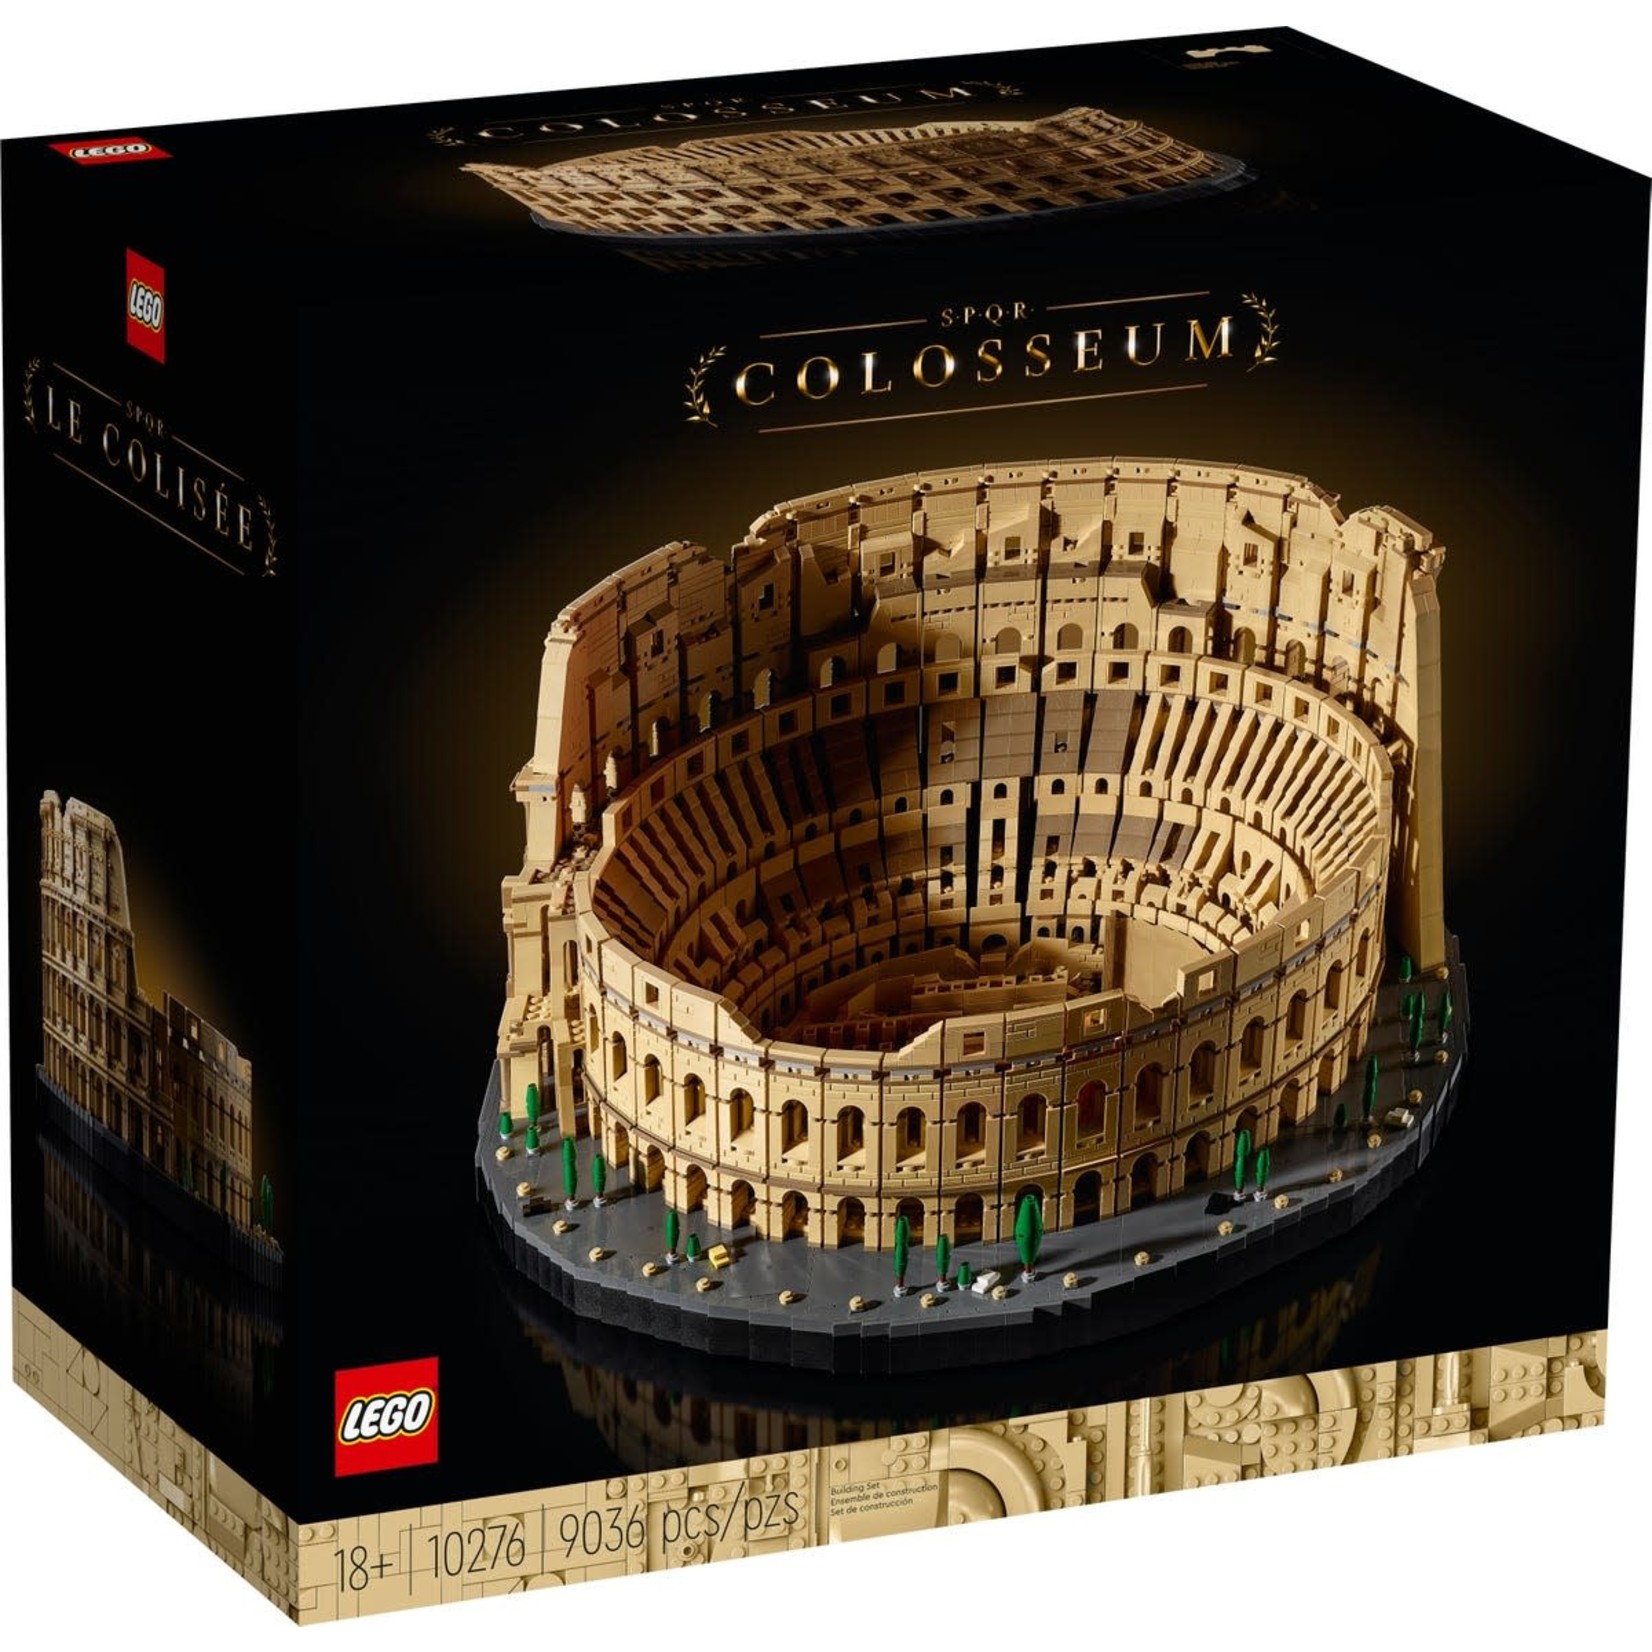 LEGO LEGO Creator Expert Colosseum 10276